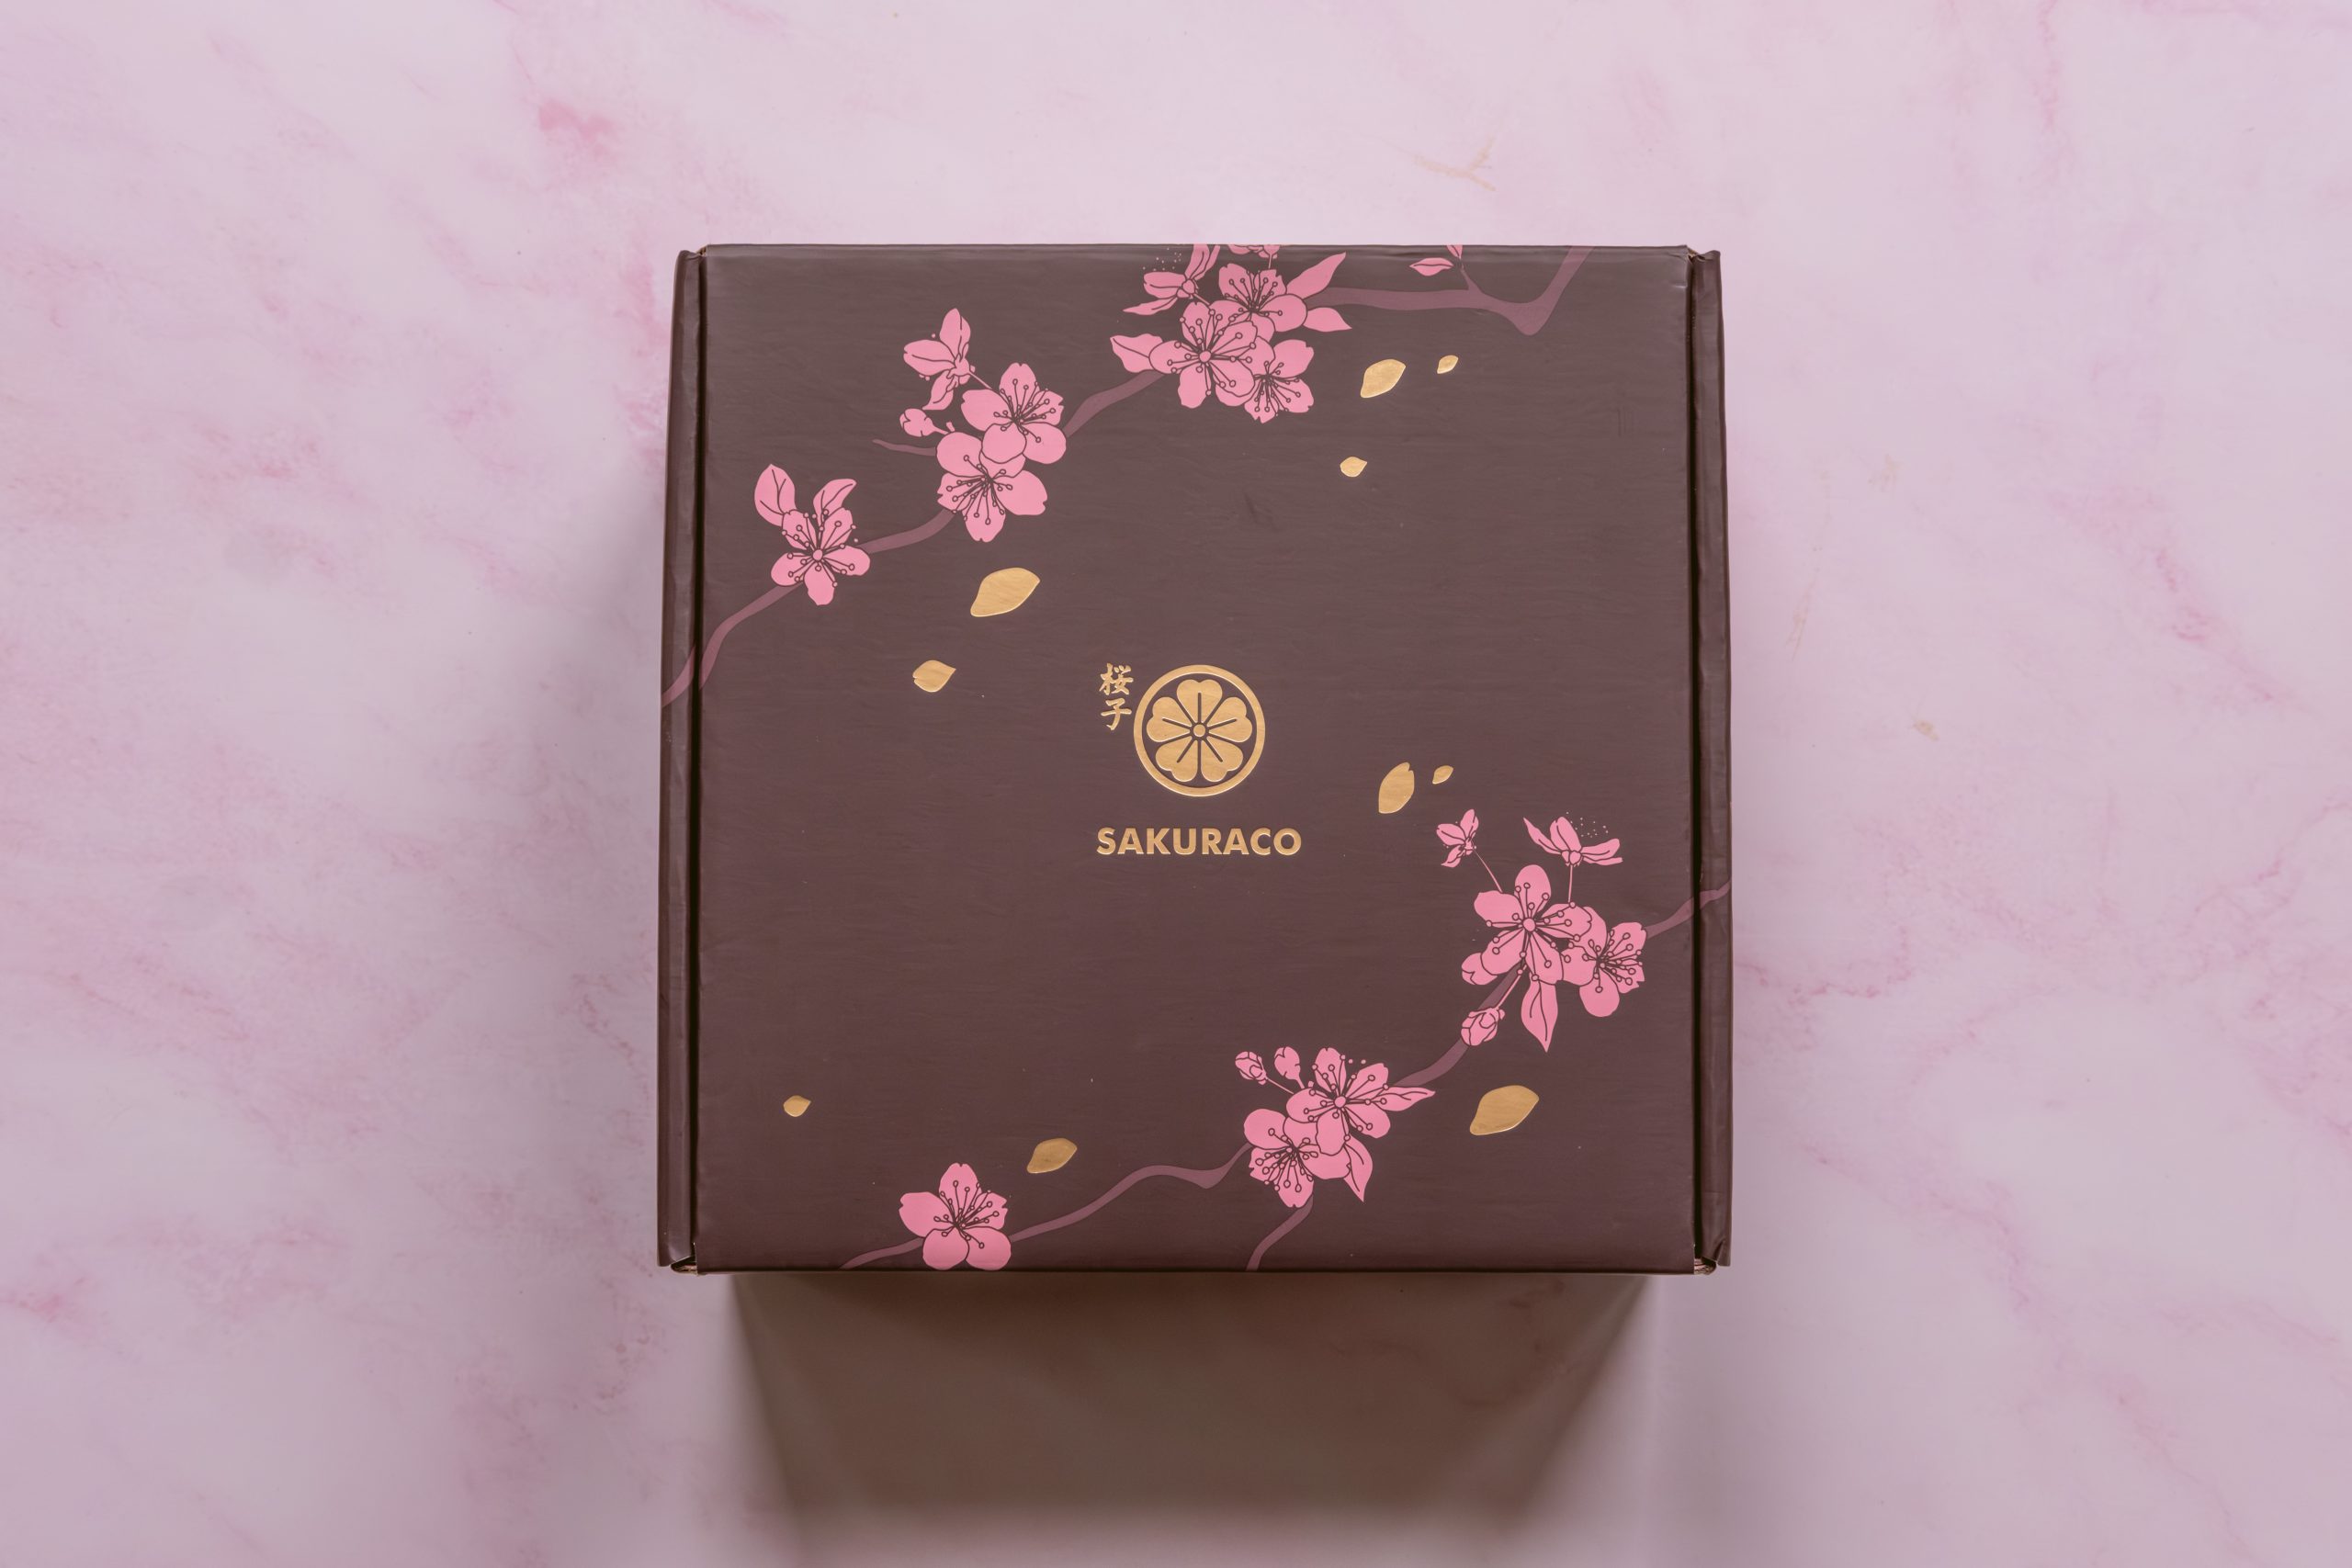 Beautiful Sakuraco box